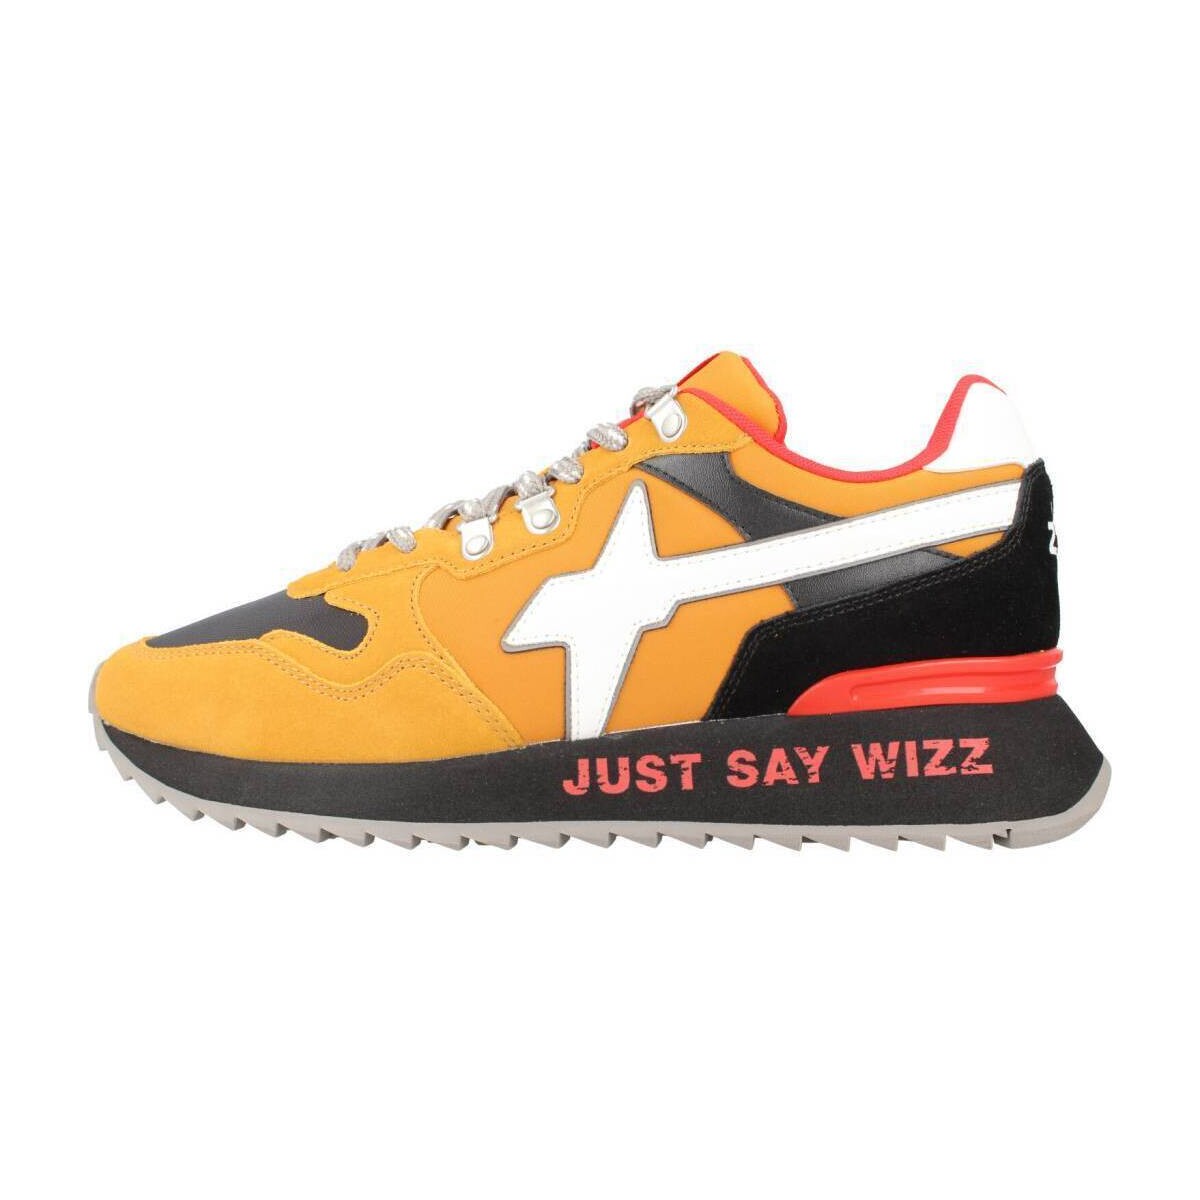 Sneakers W6yz 201518511 YAK-M